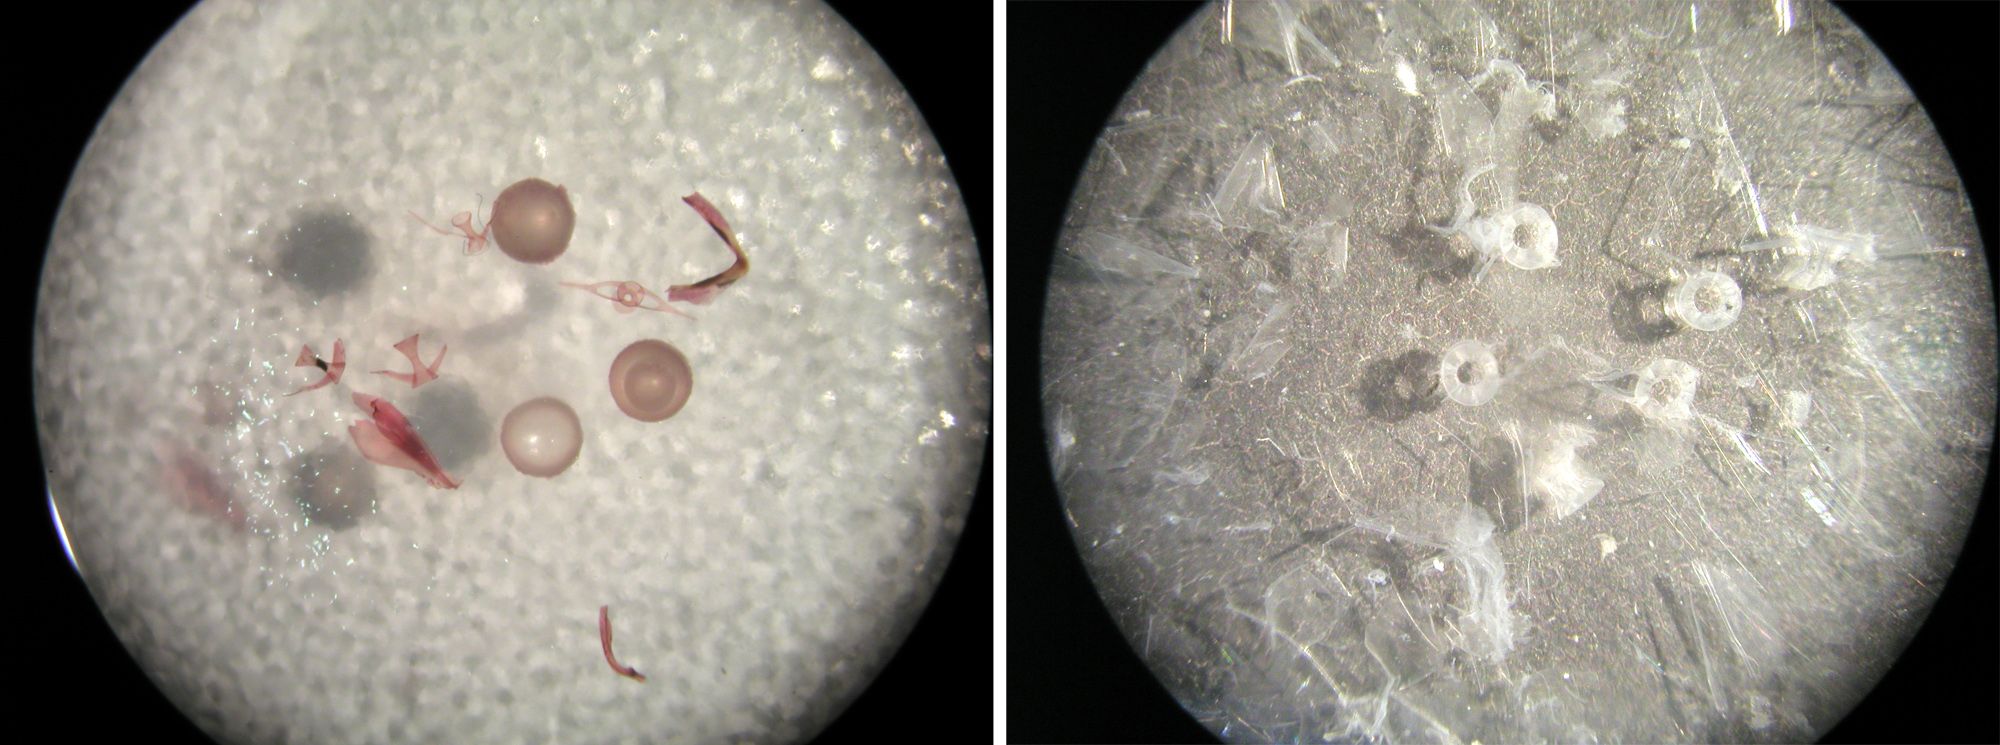 Mikroskopische Aufnahmen aus dem Mageninhalt von Tintenfischen: Grundel-Otolithen, Tintenfischschnabel, Tintenfischlinse (links), Fischwirbel (rechts).